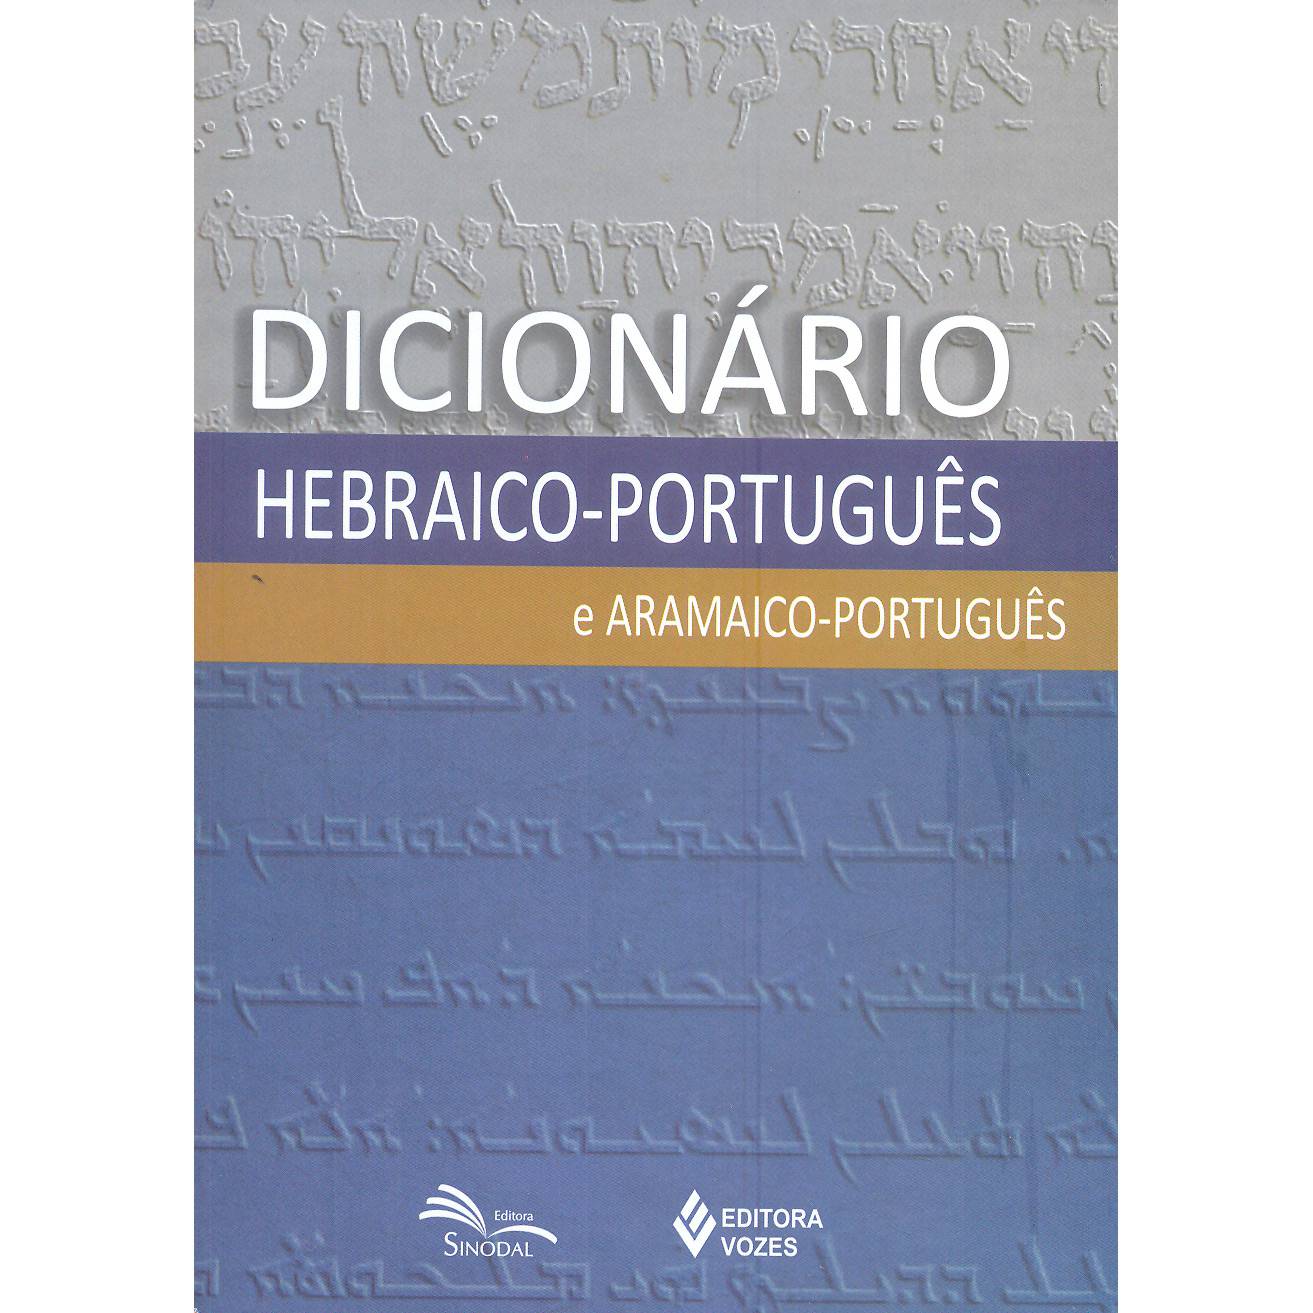 9788532637413 - DICIONÁRIO HEBRAICO-PORTUGUÊS E ARAMAICO-PORTUGUÊS 555G EDITORA VOZES